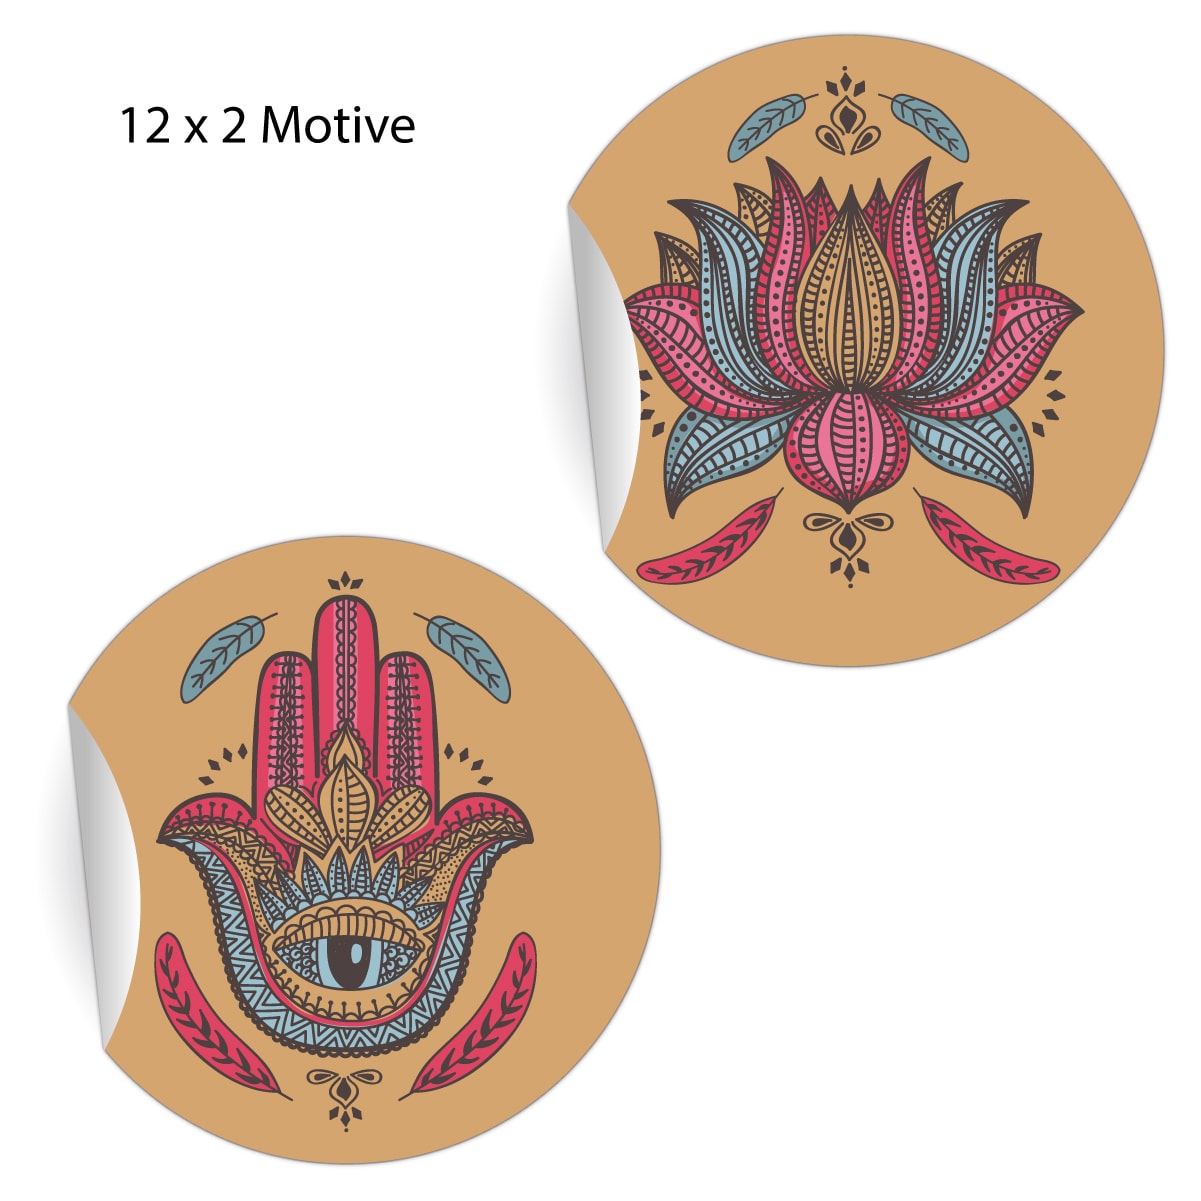 Kartenkaufrausch: edle ethno Aufkleber mit indischen Motiven aus unserer Designer Papeterie in beige